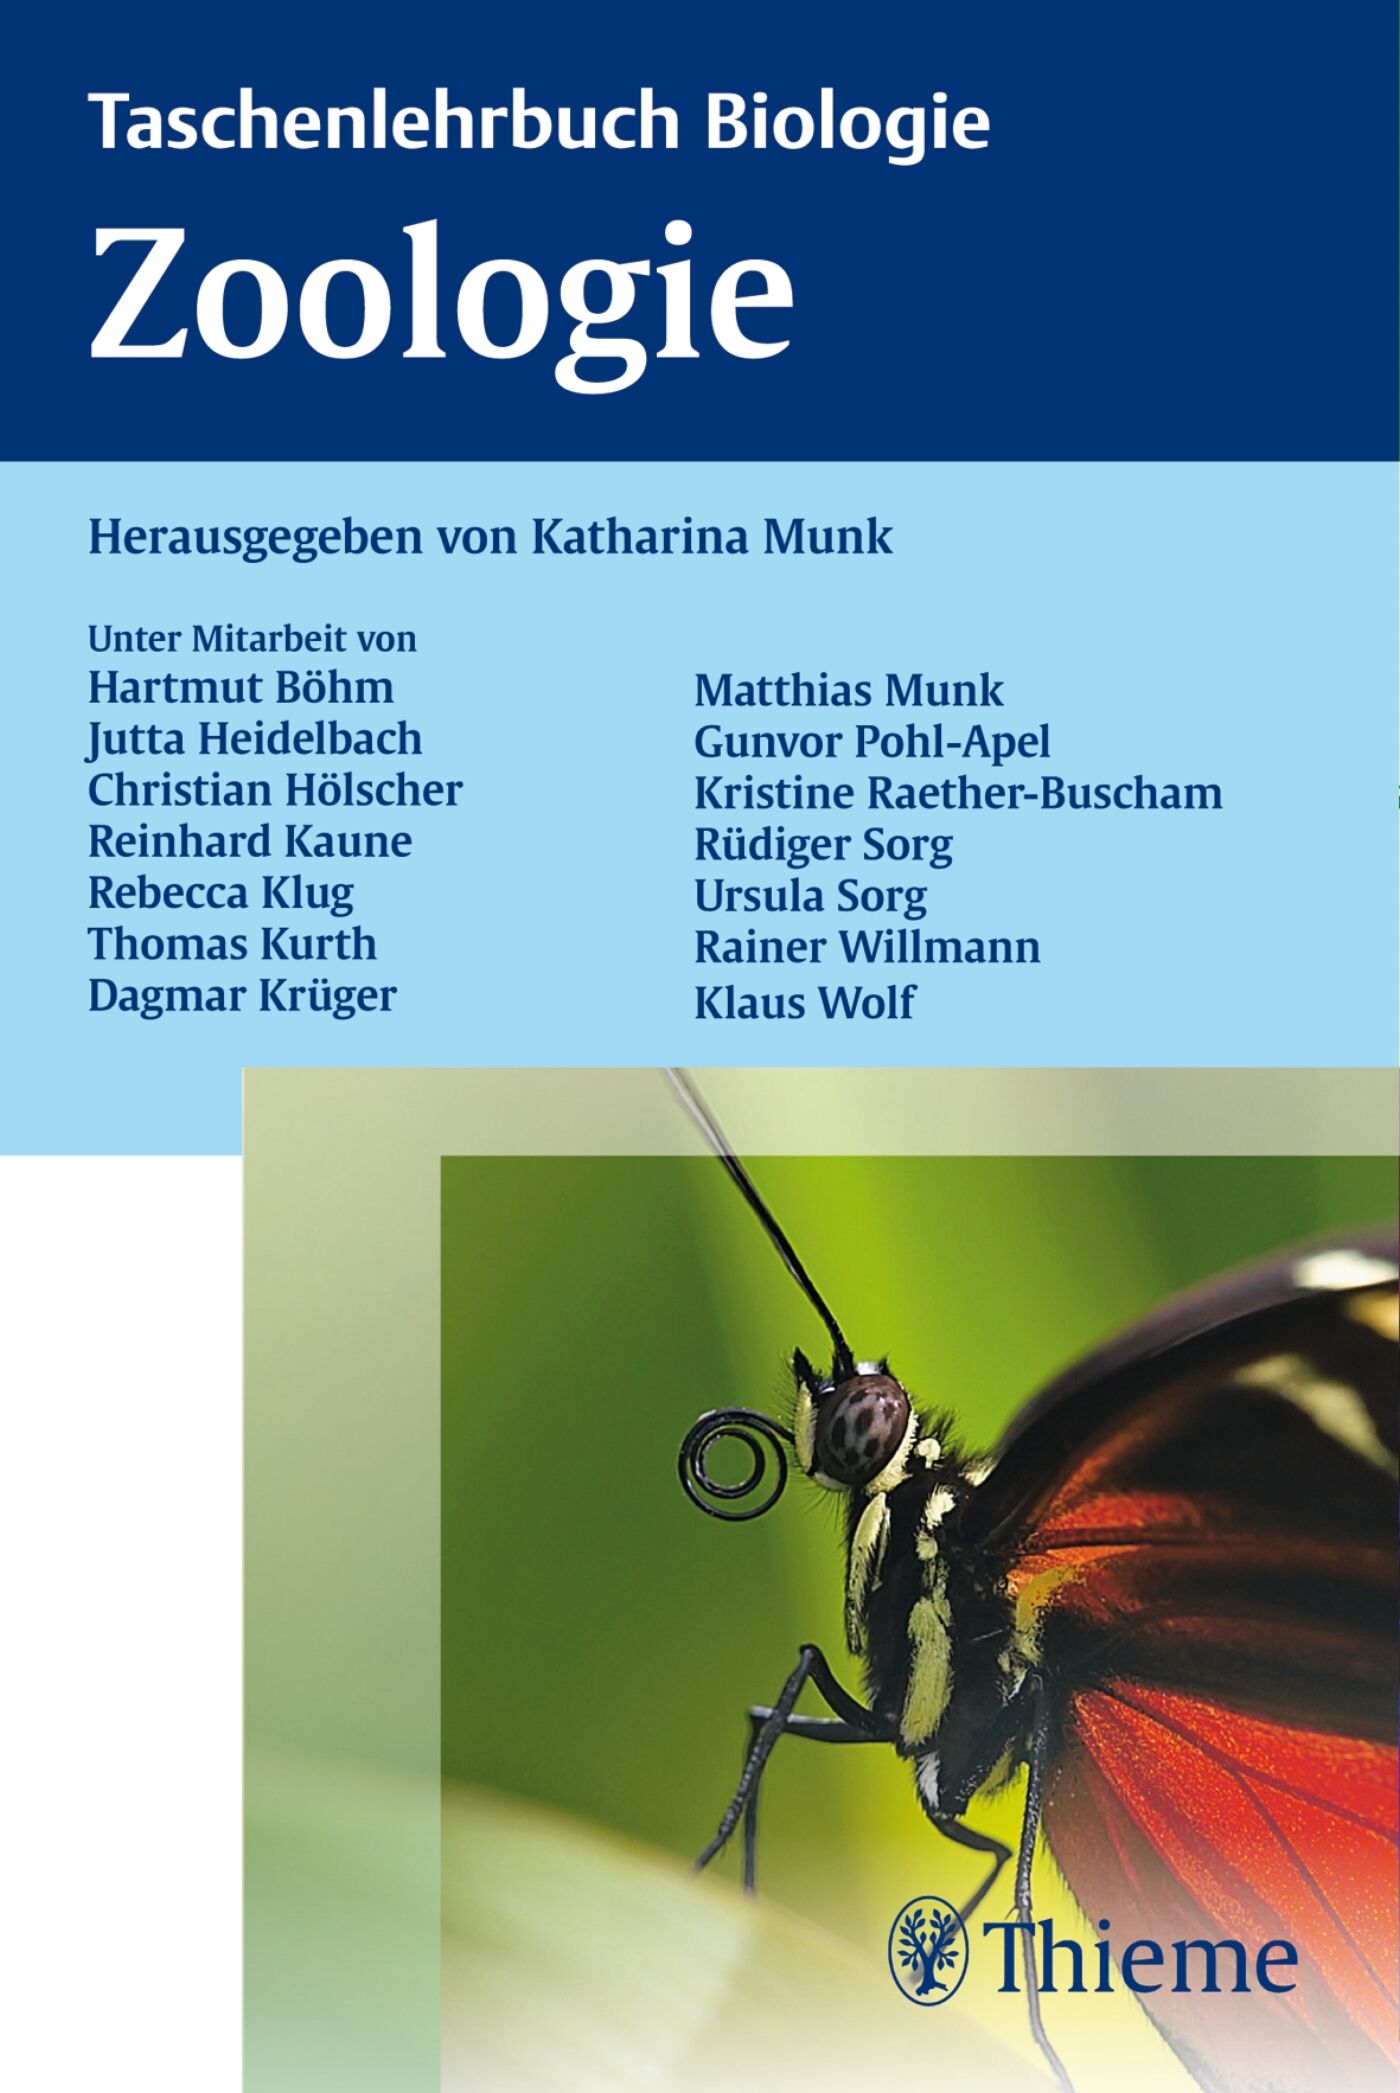 Taschenlehrbuch Biologie: Zoologie, 9783131686312